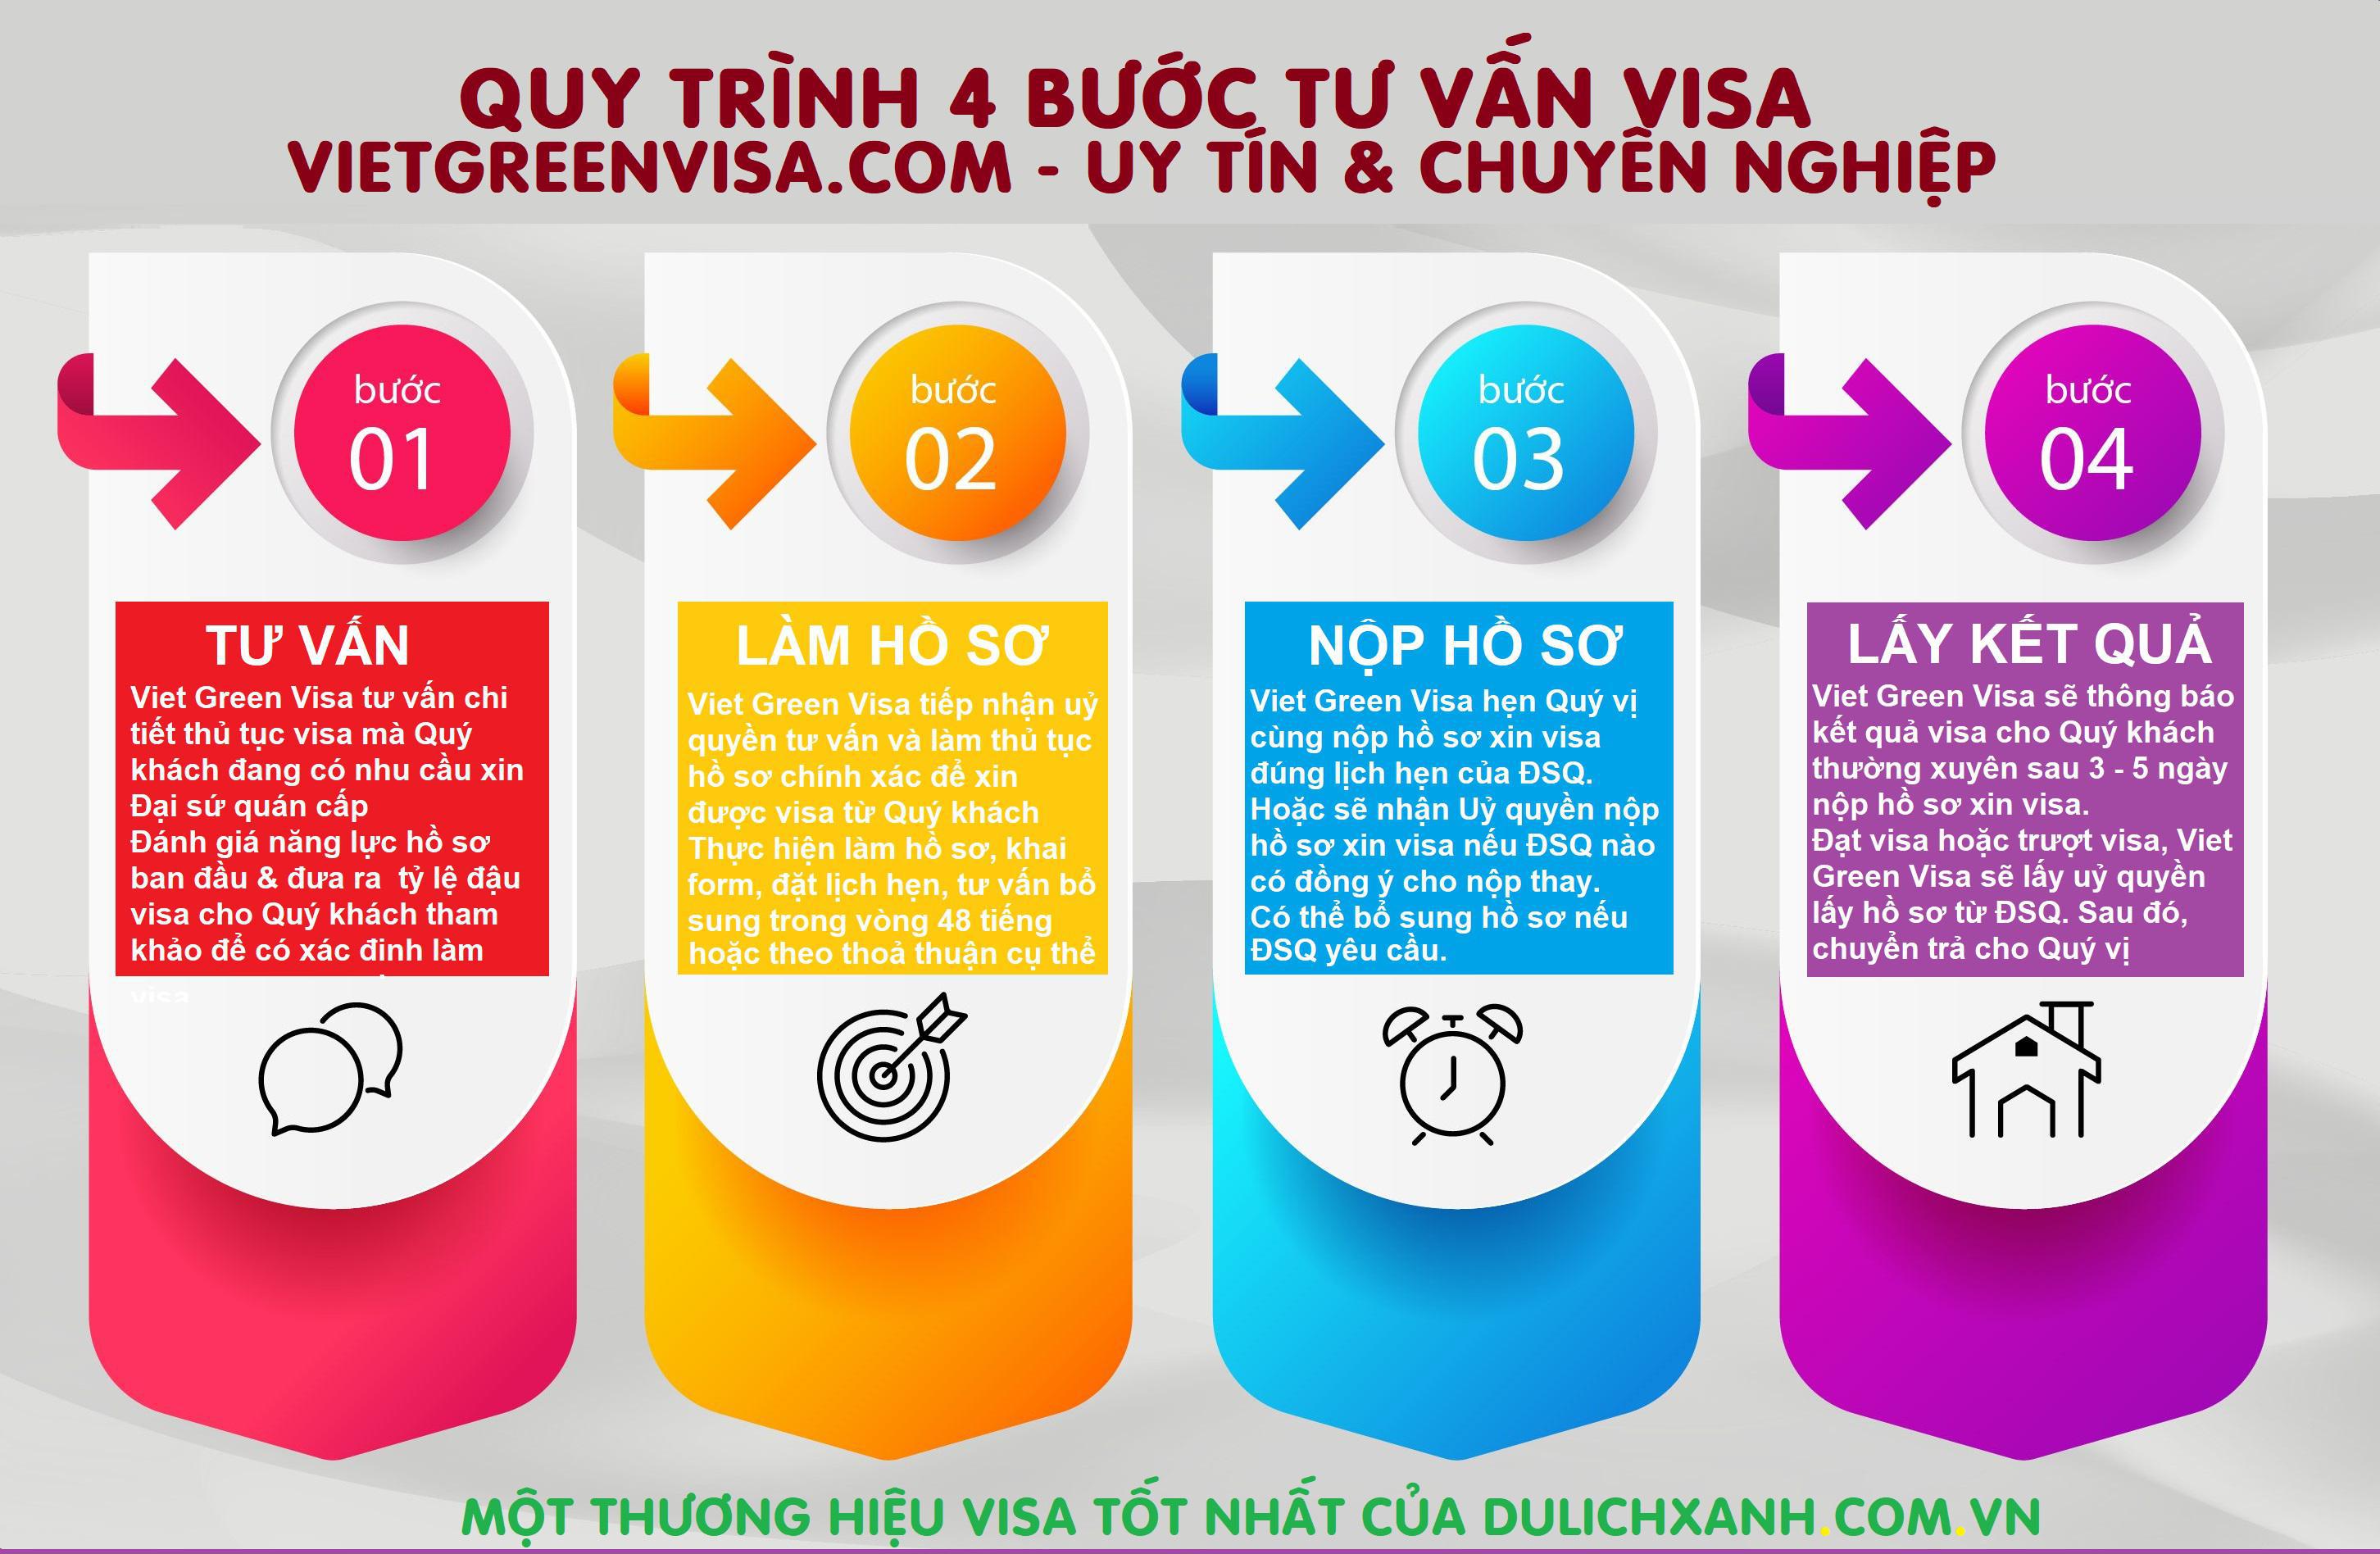 Visa Dubai lưu trú 30 ngày tại Hà Nội, Hồ Chí Minh